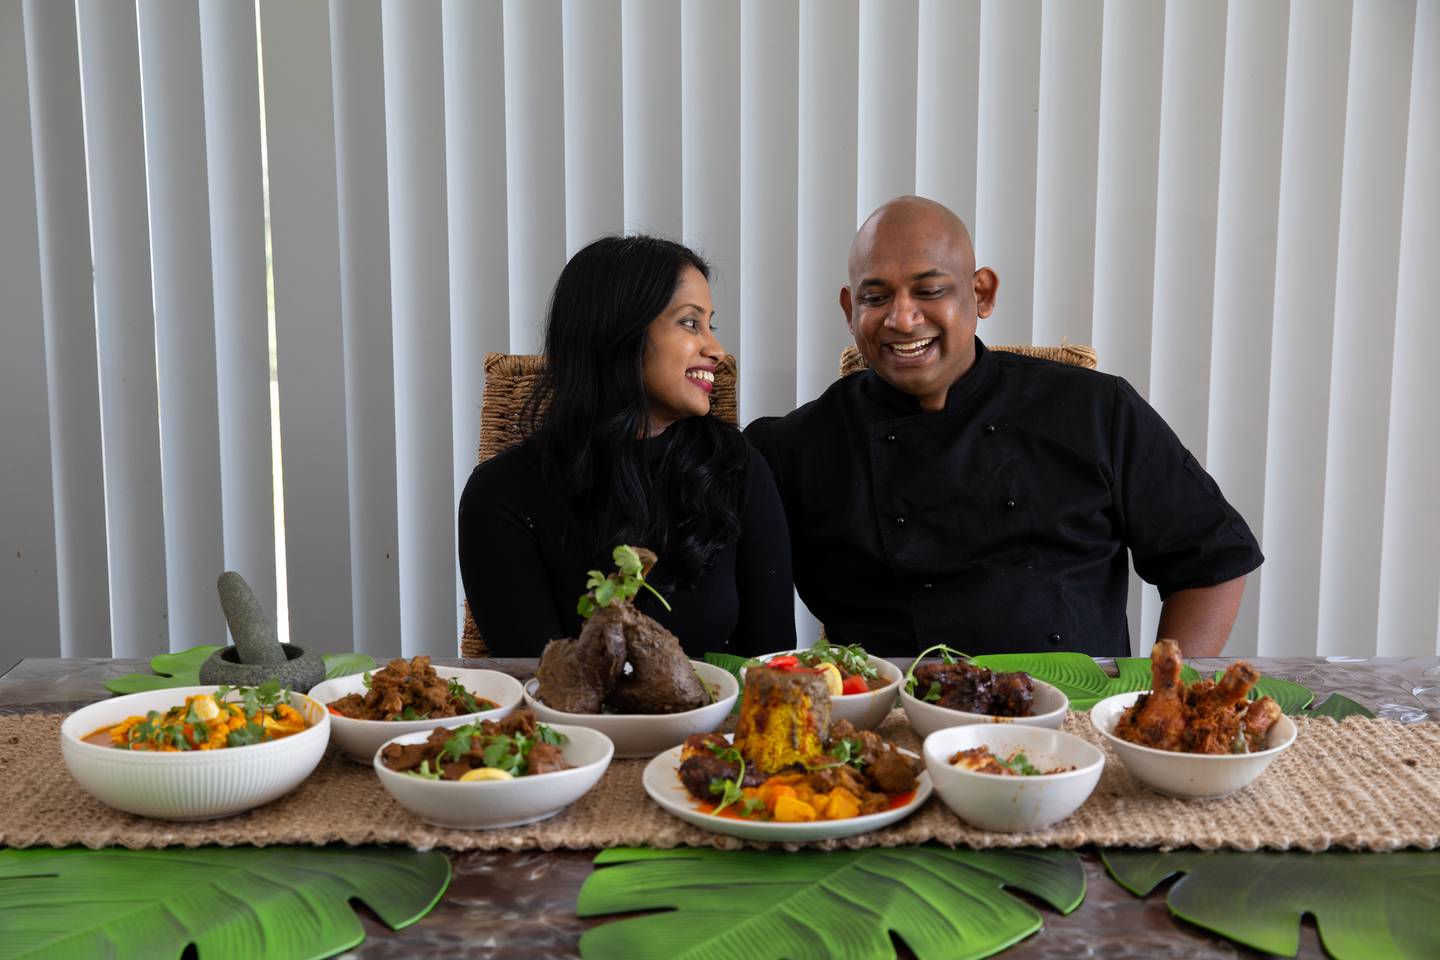  Sam Shevchenko và niềm yêu thích sushi từ thời thơ ấu. (Nguồn: NZ Herald)  Joel Singam cùng vợ trở về với ẩm thực Ấn Độ-Malaysia truyền thống. (Nguồn: NZ Herald)